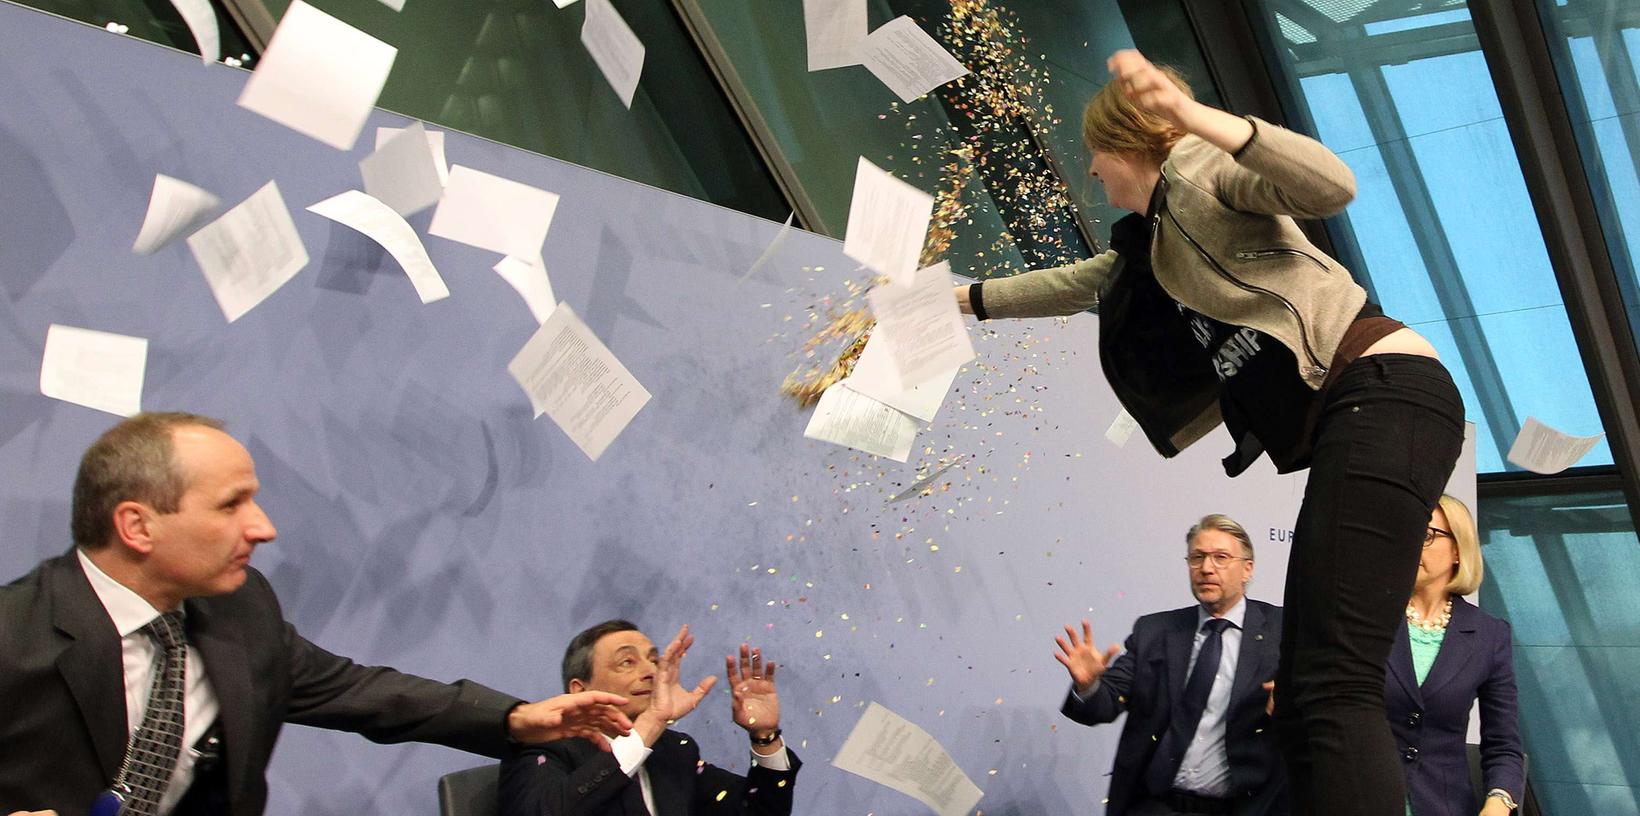 Ein erschreckender Moment für EZB-Chef Mario Draghi: Eine Frau sprang bei einem Pressegespräch auf das Rednerpult.